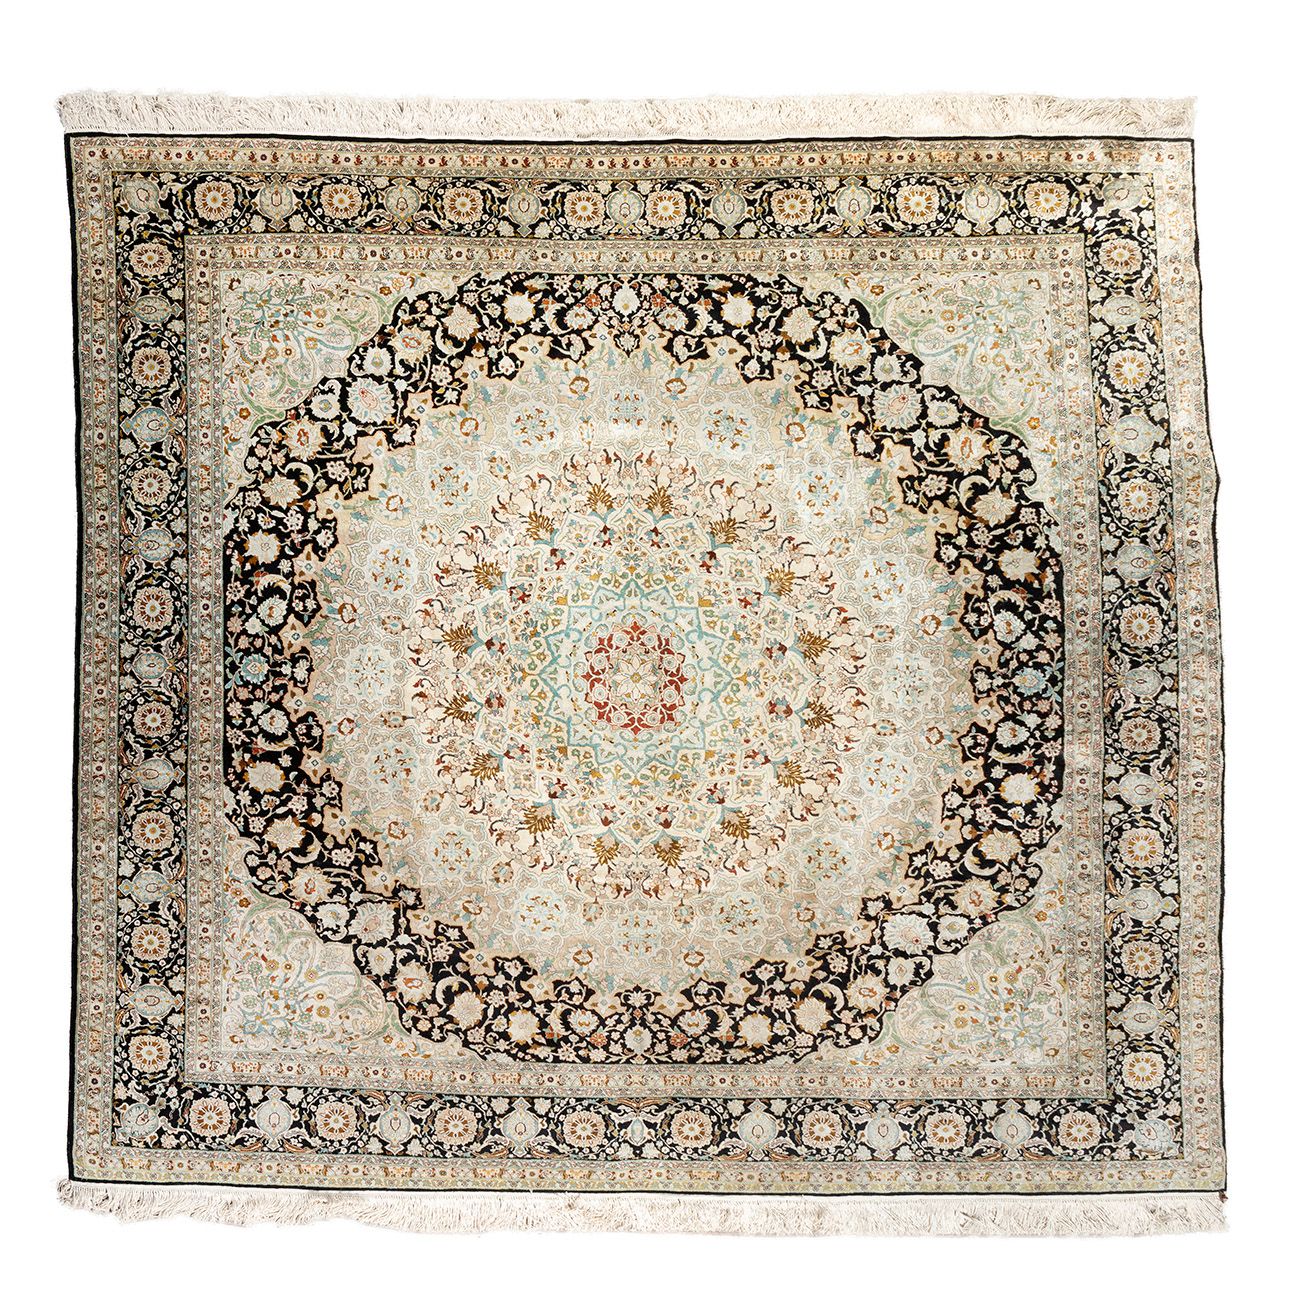 Null Persian carpet; Iran, ca. 1970.
Wool and silk. 810. 000 knots/m2.
Provenanc&hellip;